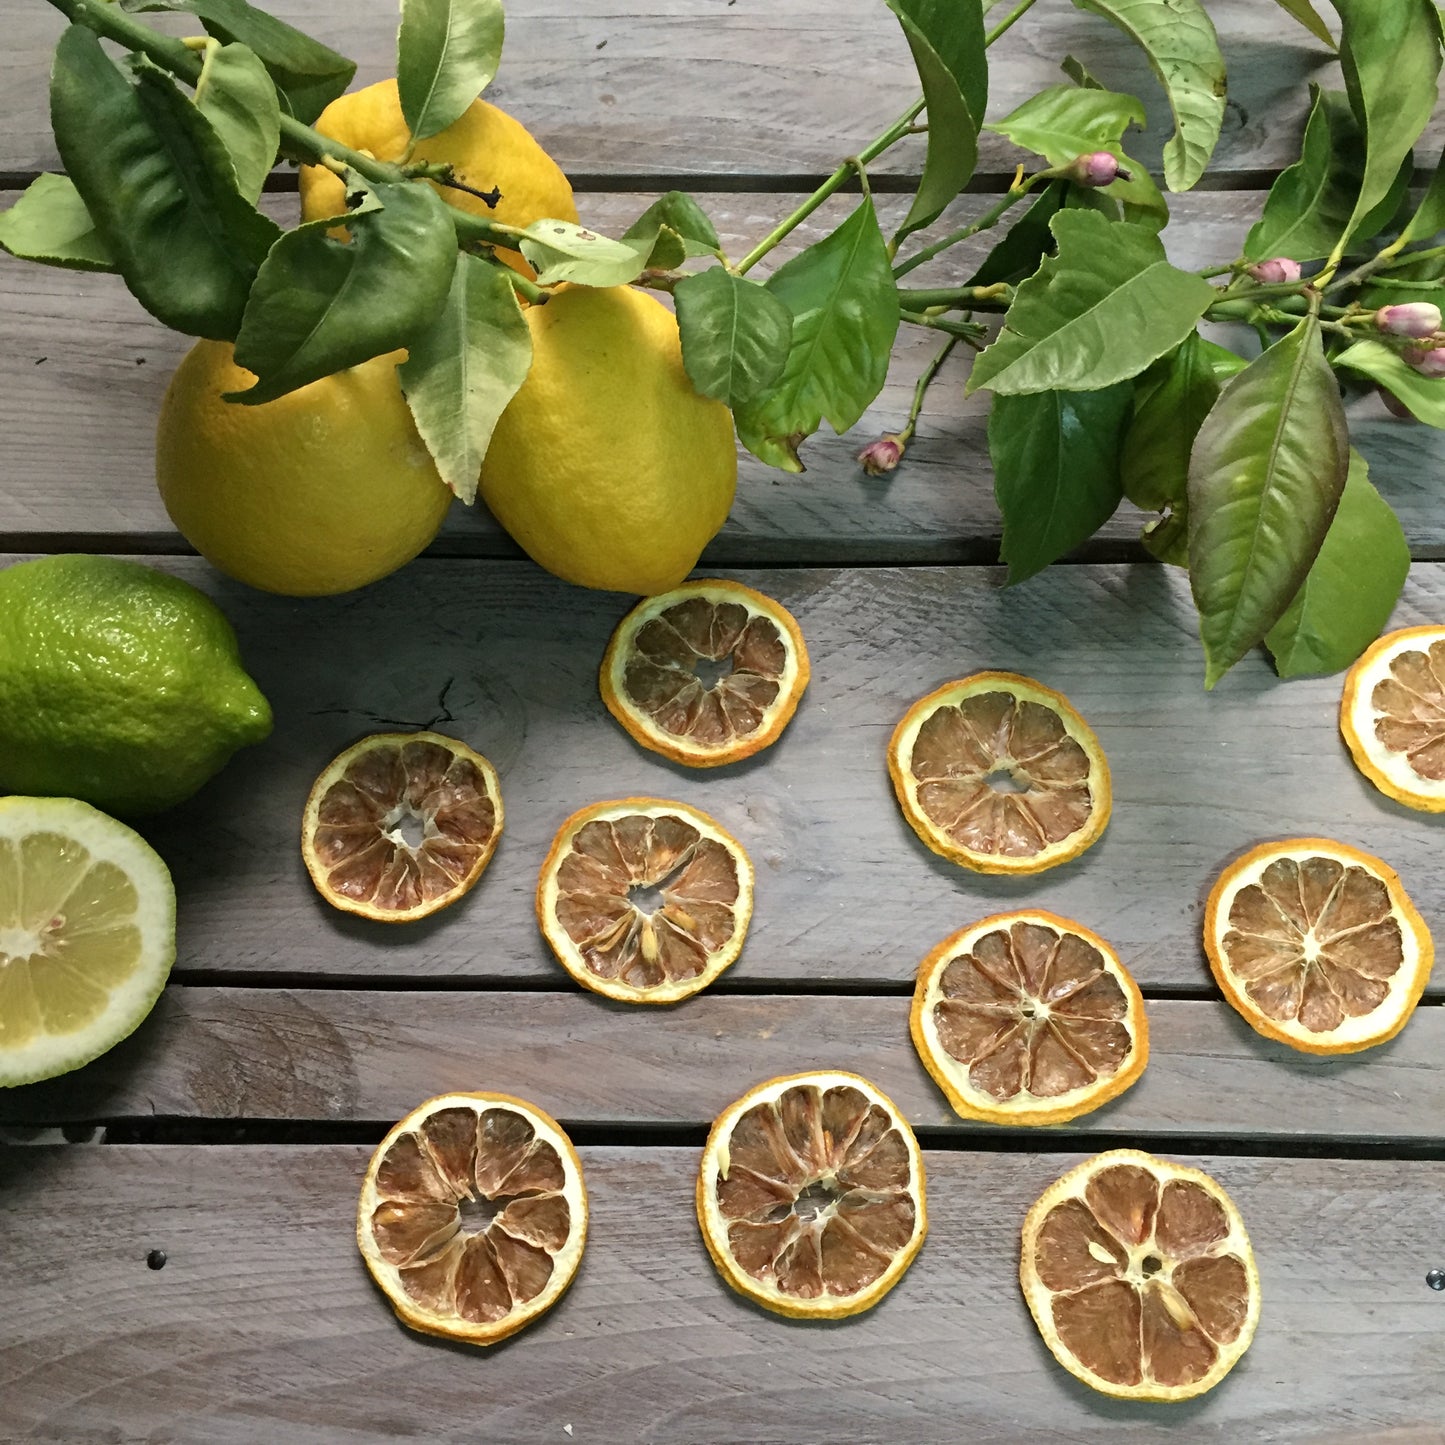 Rodajas de limón deshidratado 100% natural especial coctelería